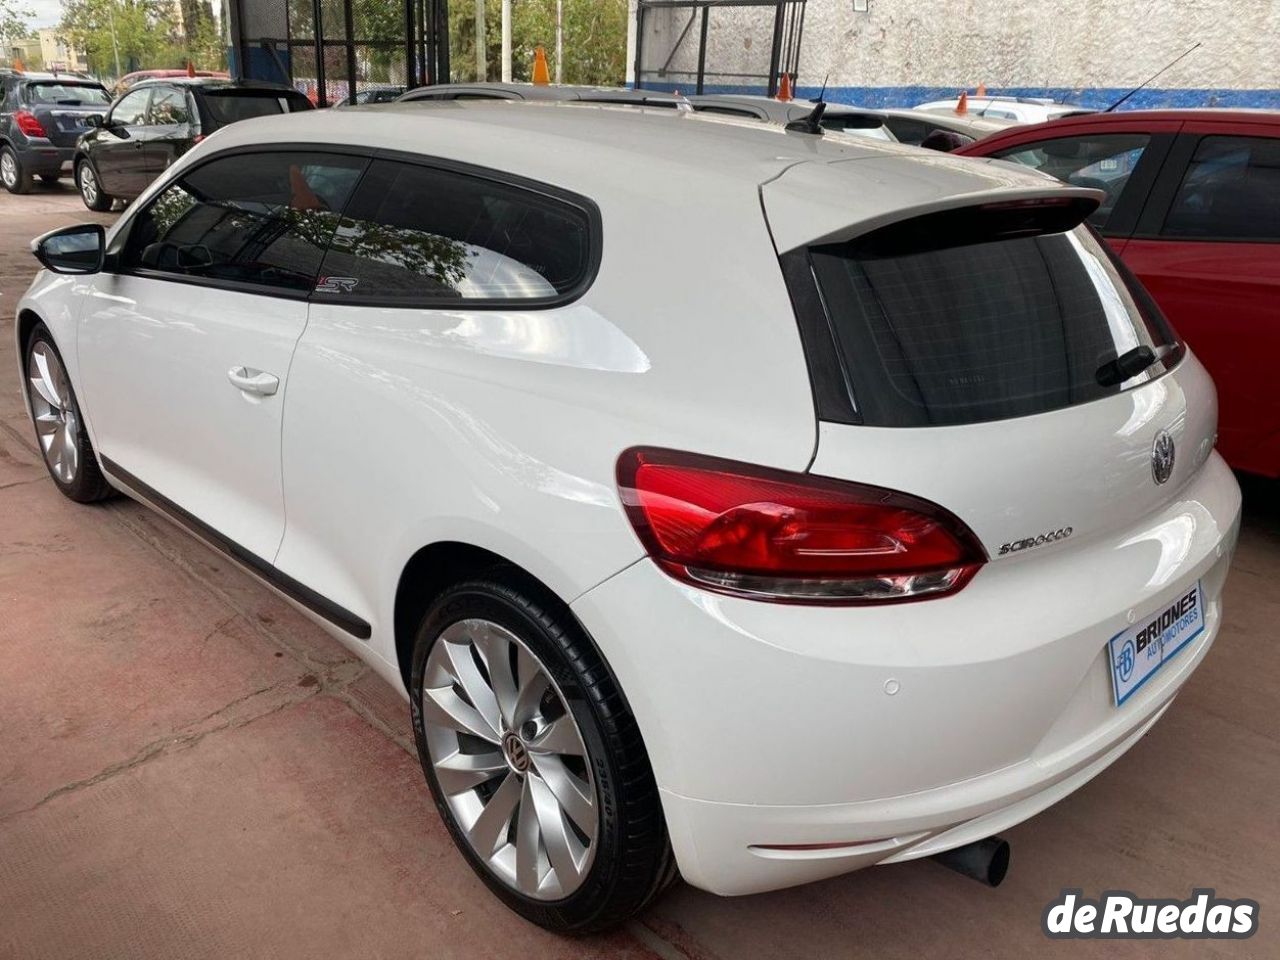 Volkswagen Scirocco Usado Financiado en Mendoza, deRuedas